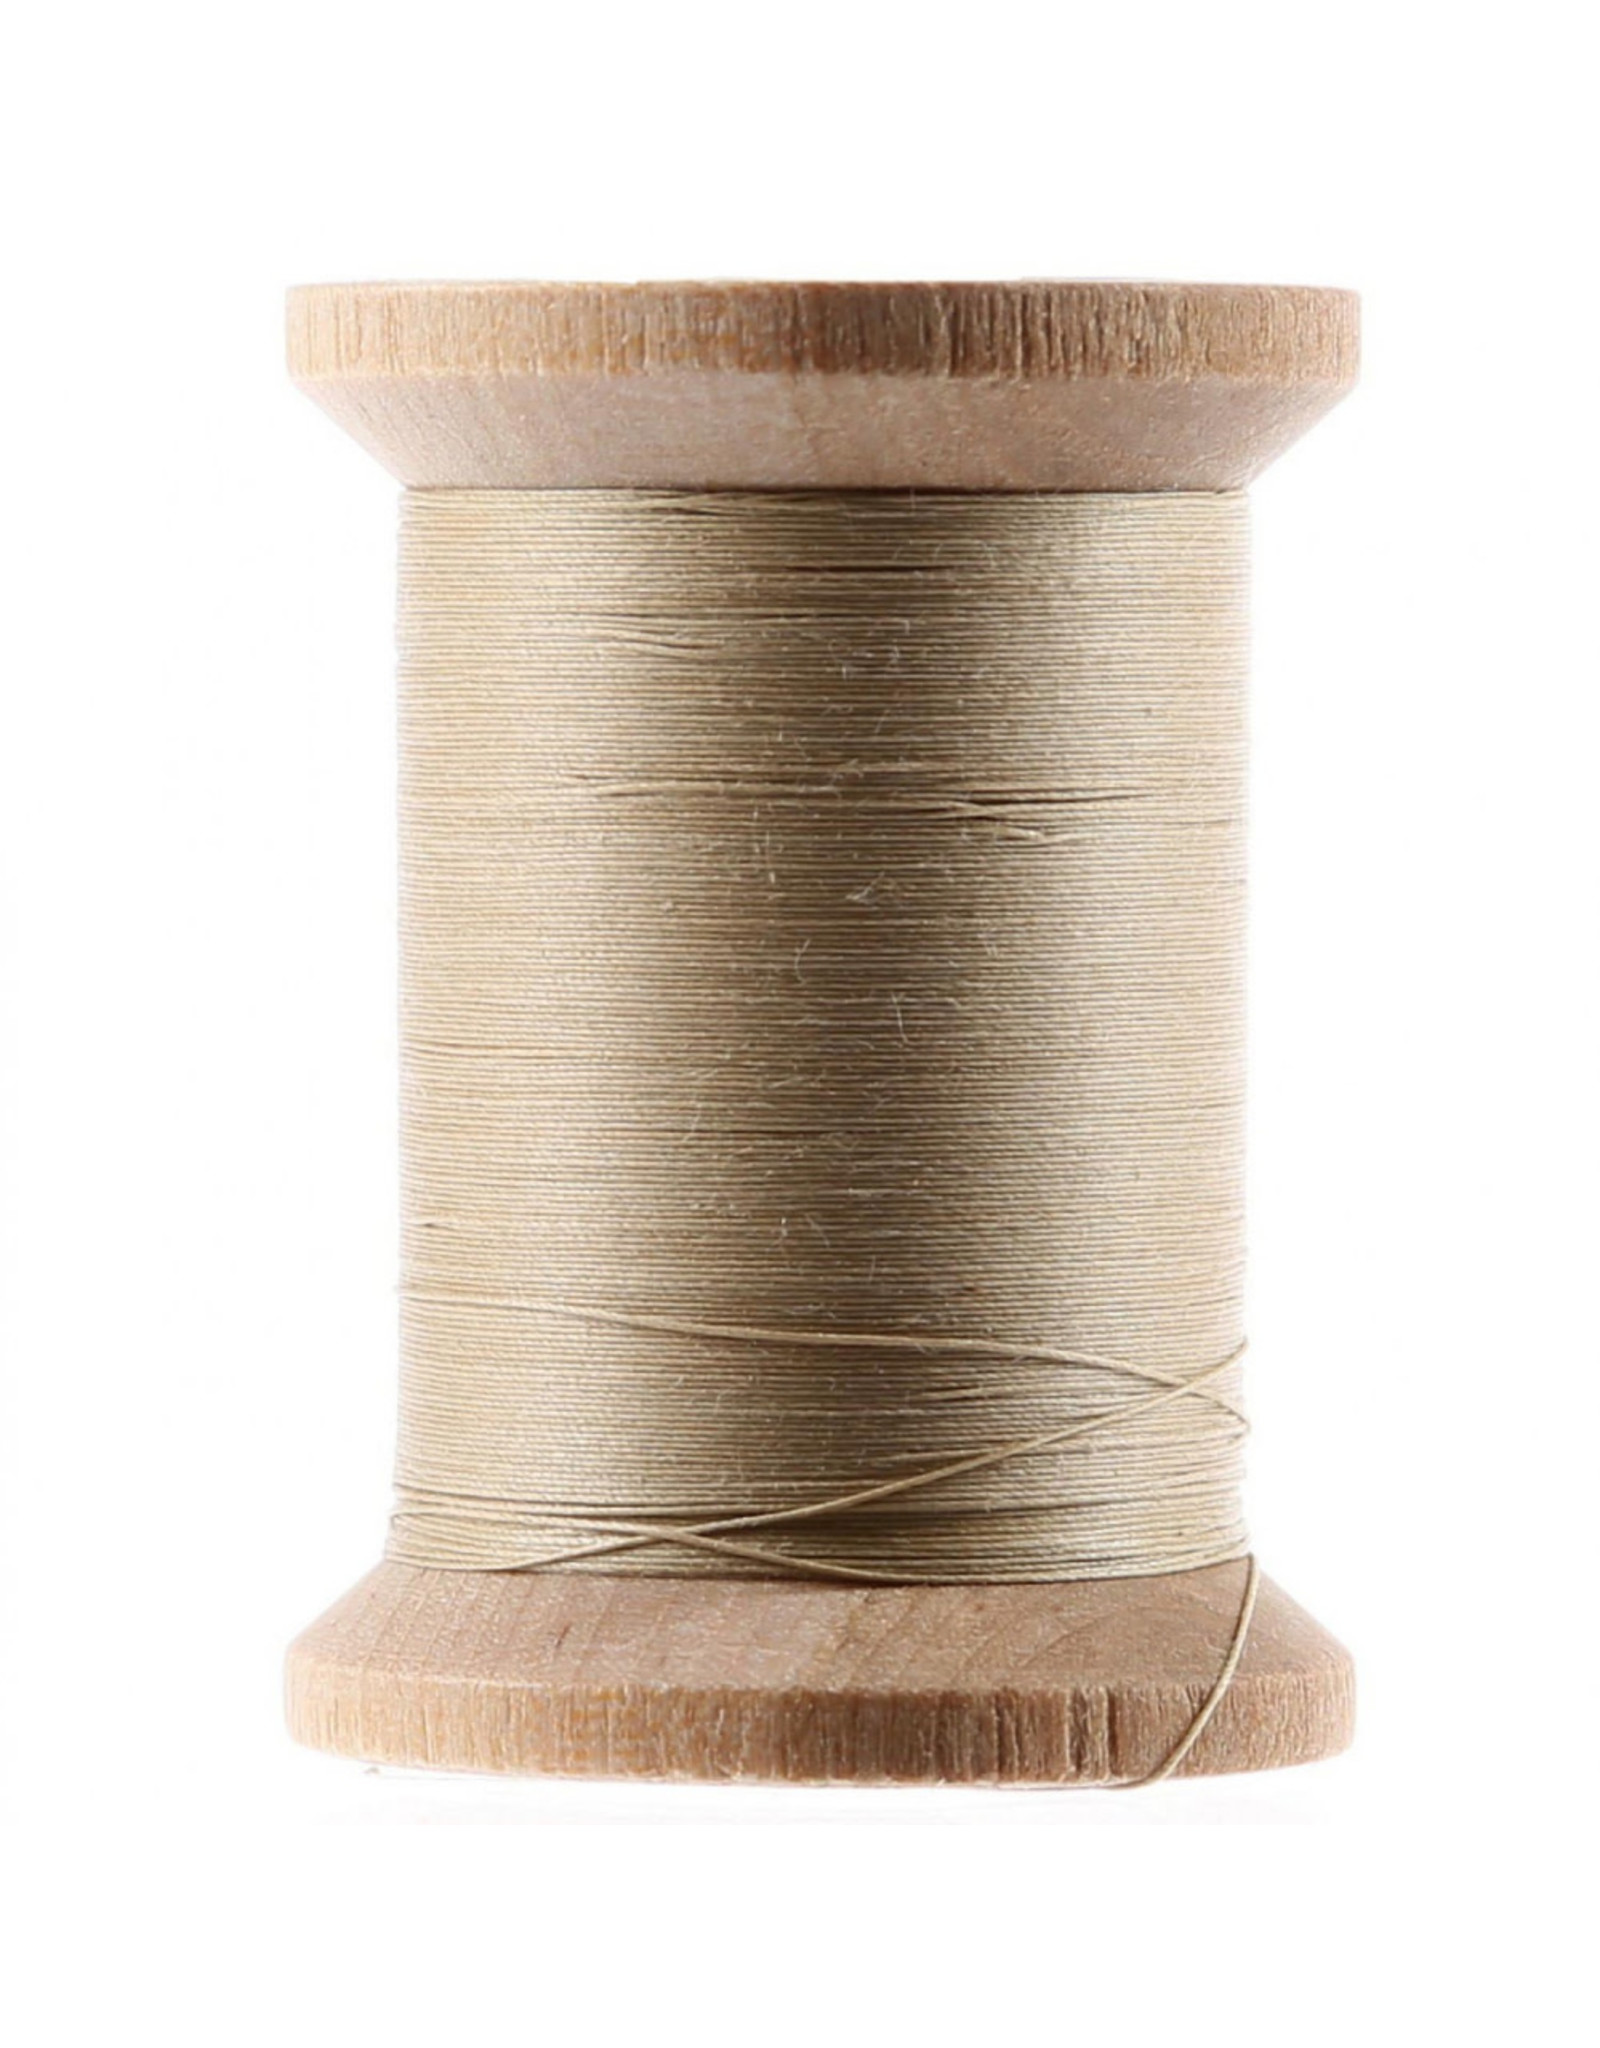 YLI YLI Cotton Hand Quilting Thread, 002 Ecru, 40wt, 3 ply, 500 yd spool